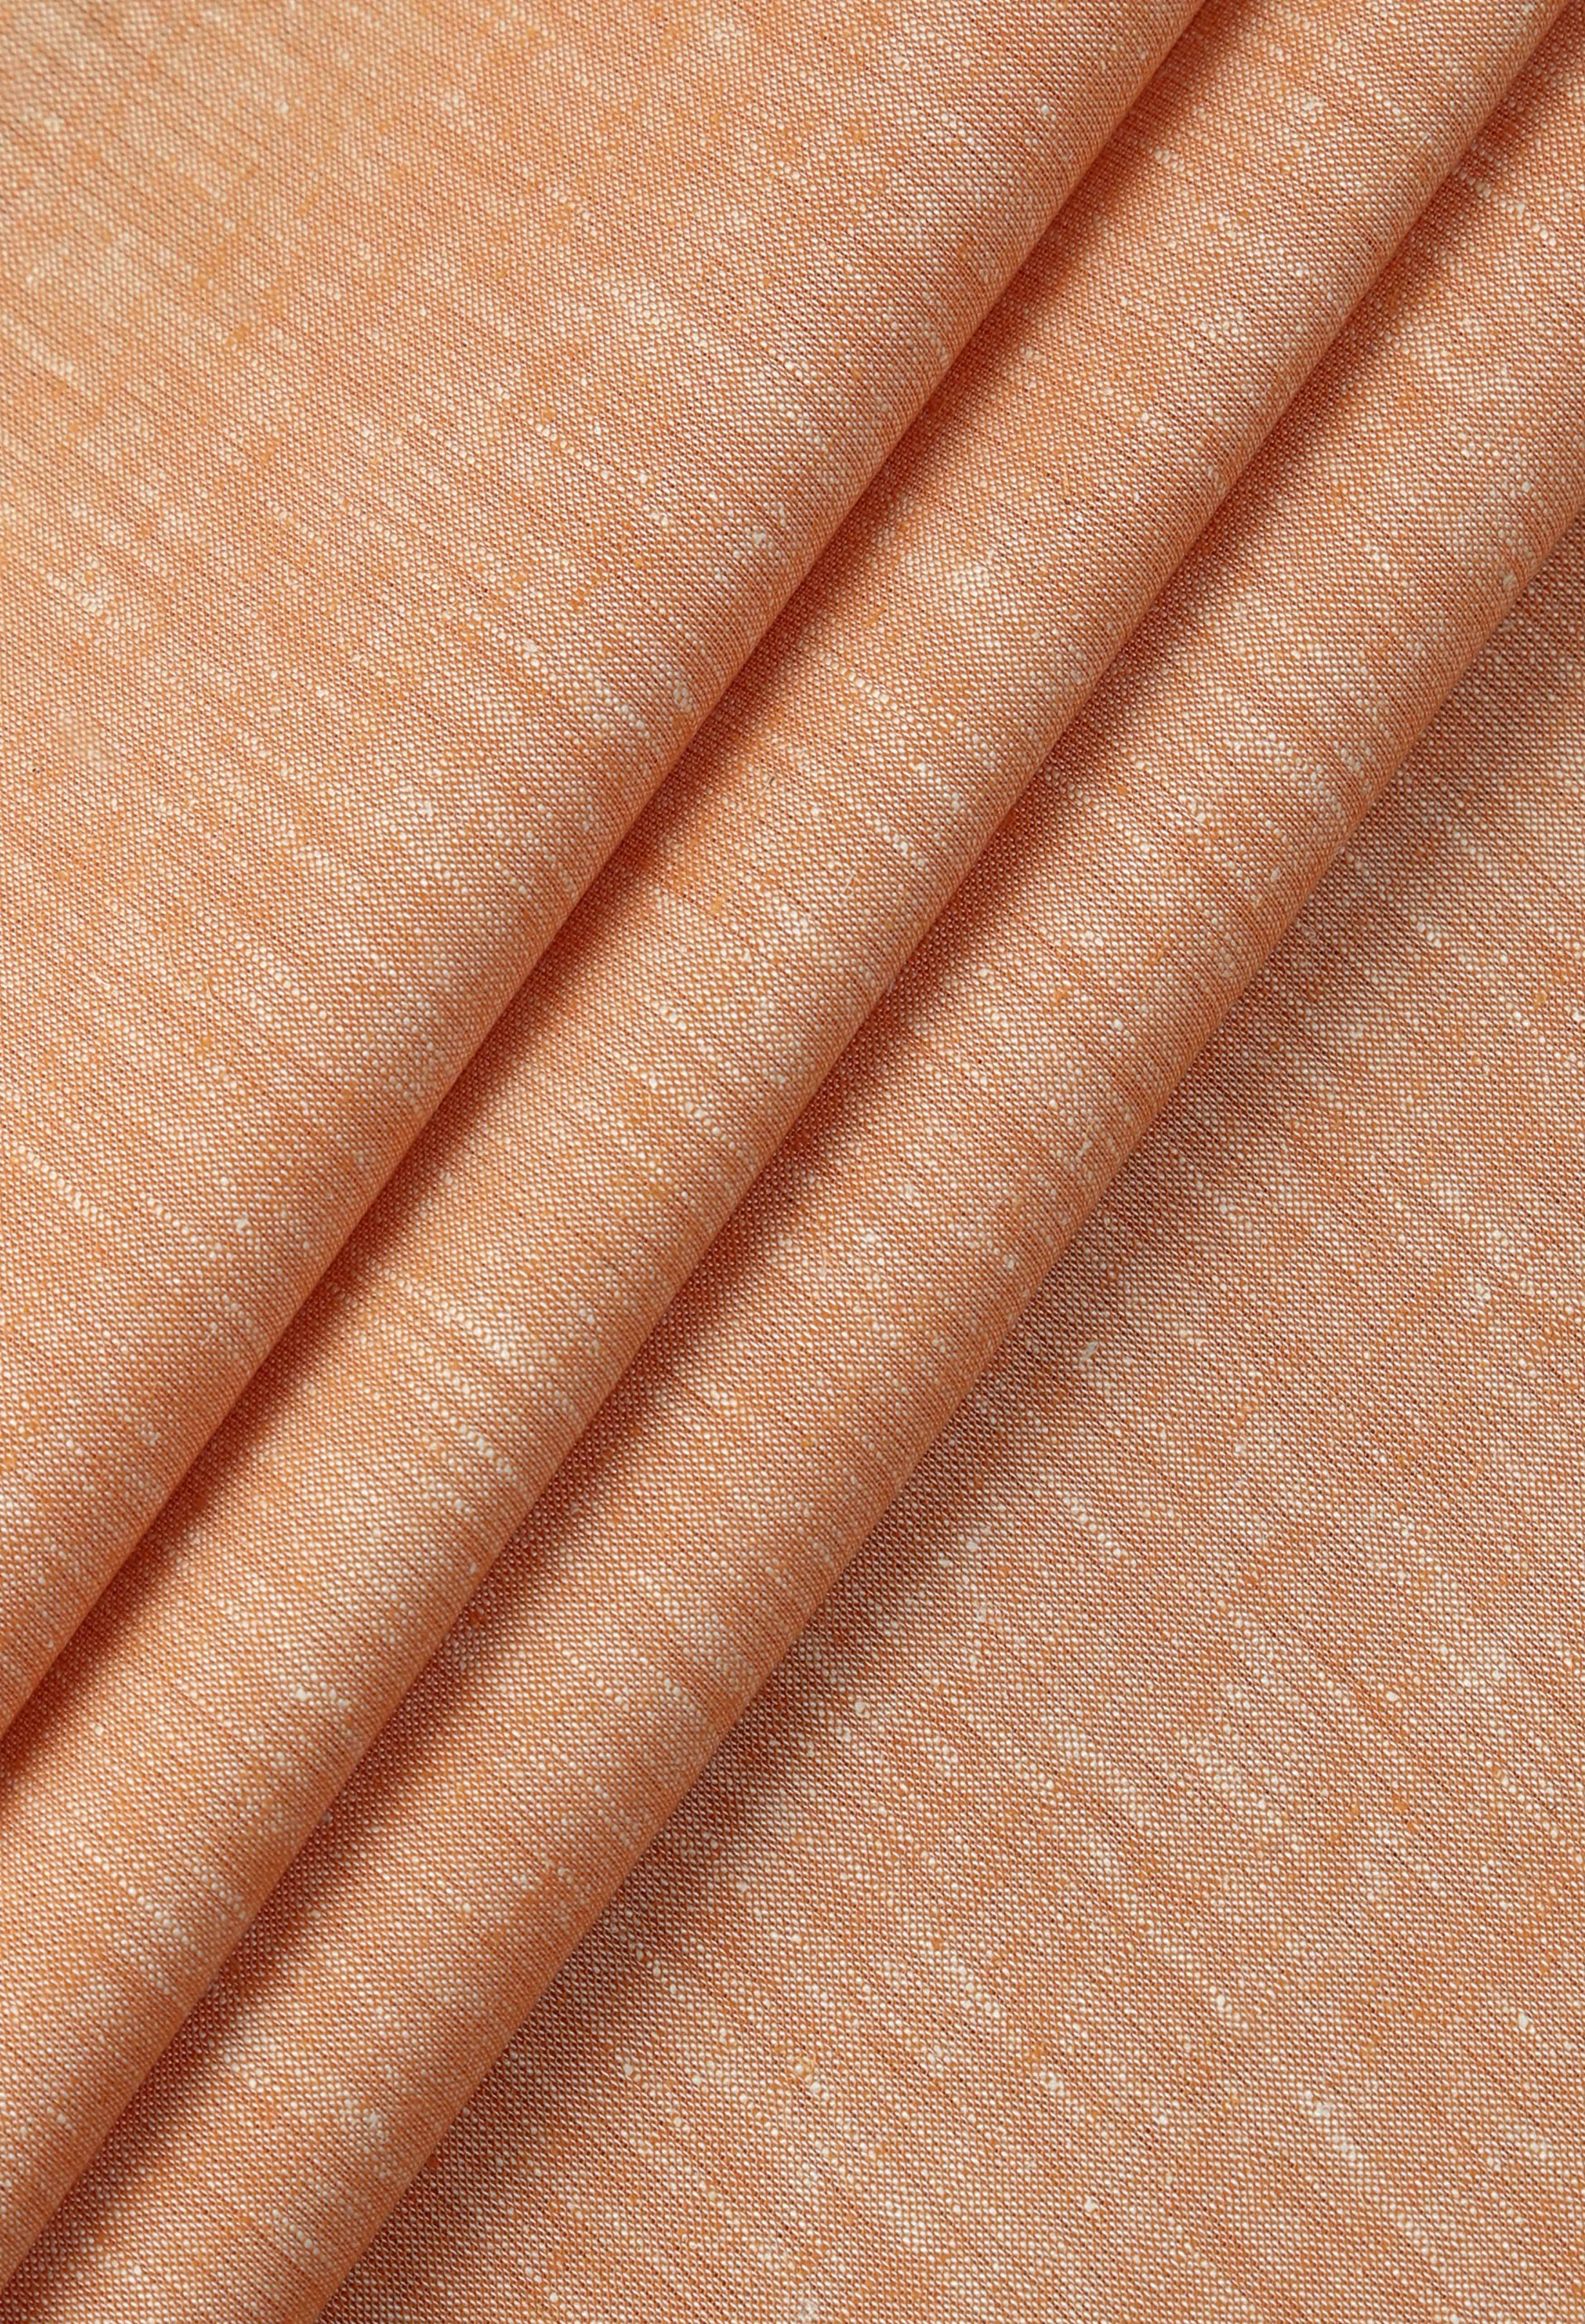 Creamy Peach Linen (TH-000673)